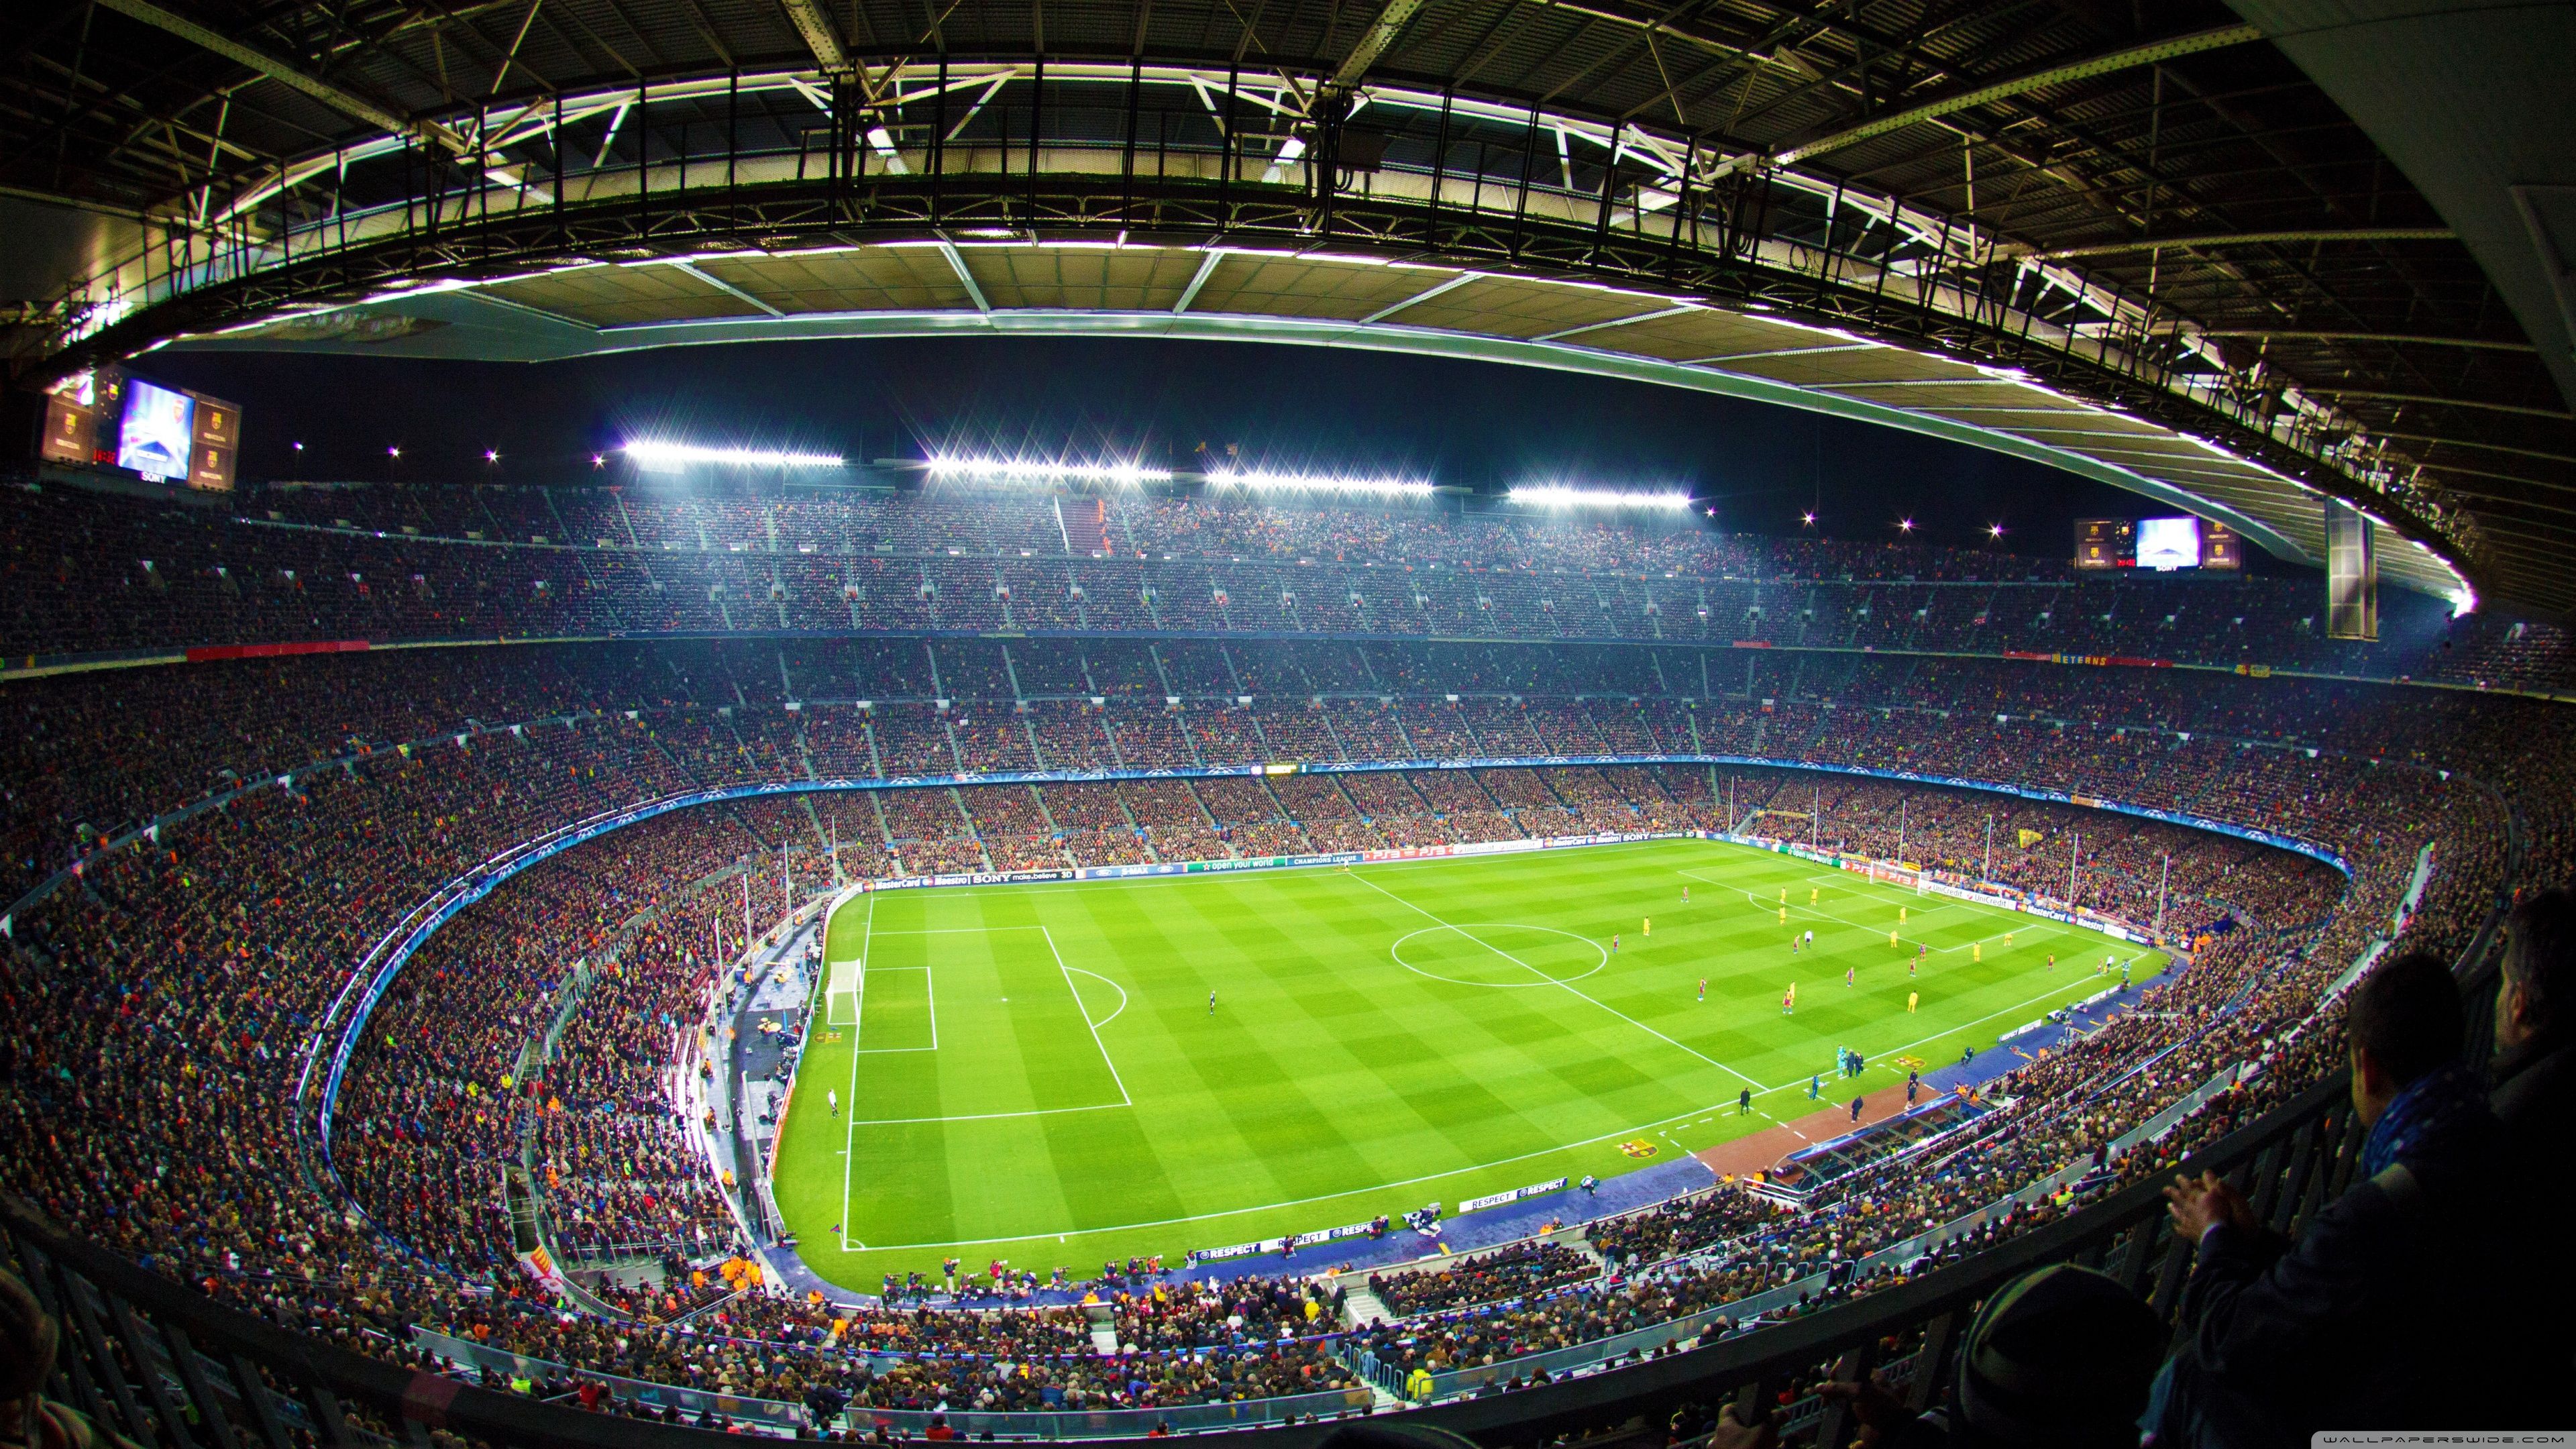 Football Stadium 4k Image